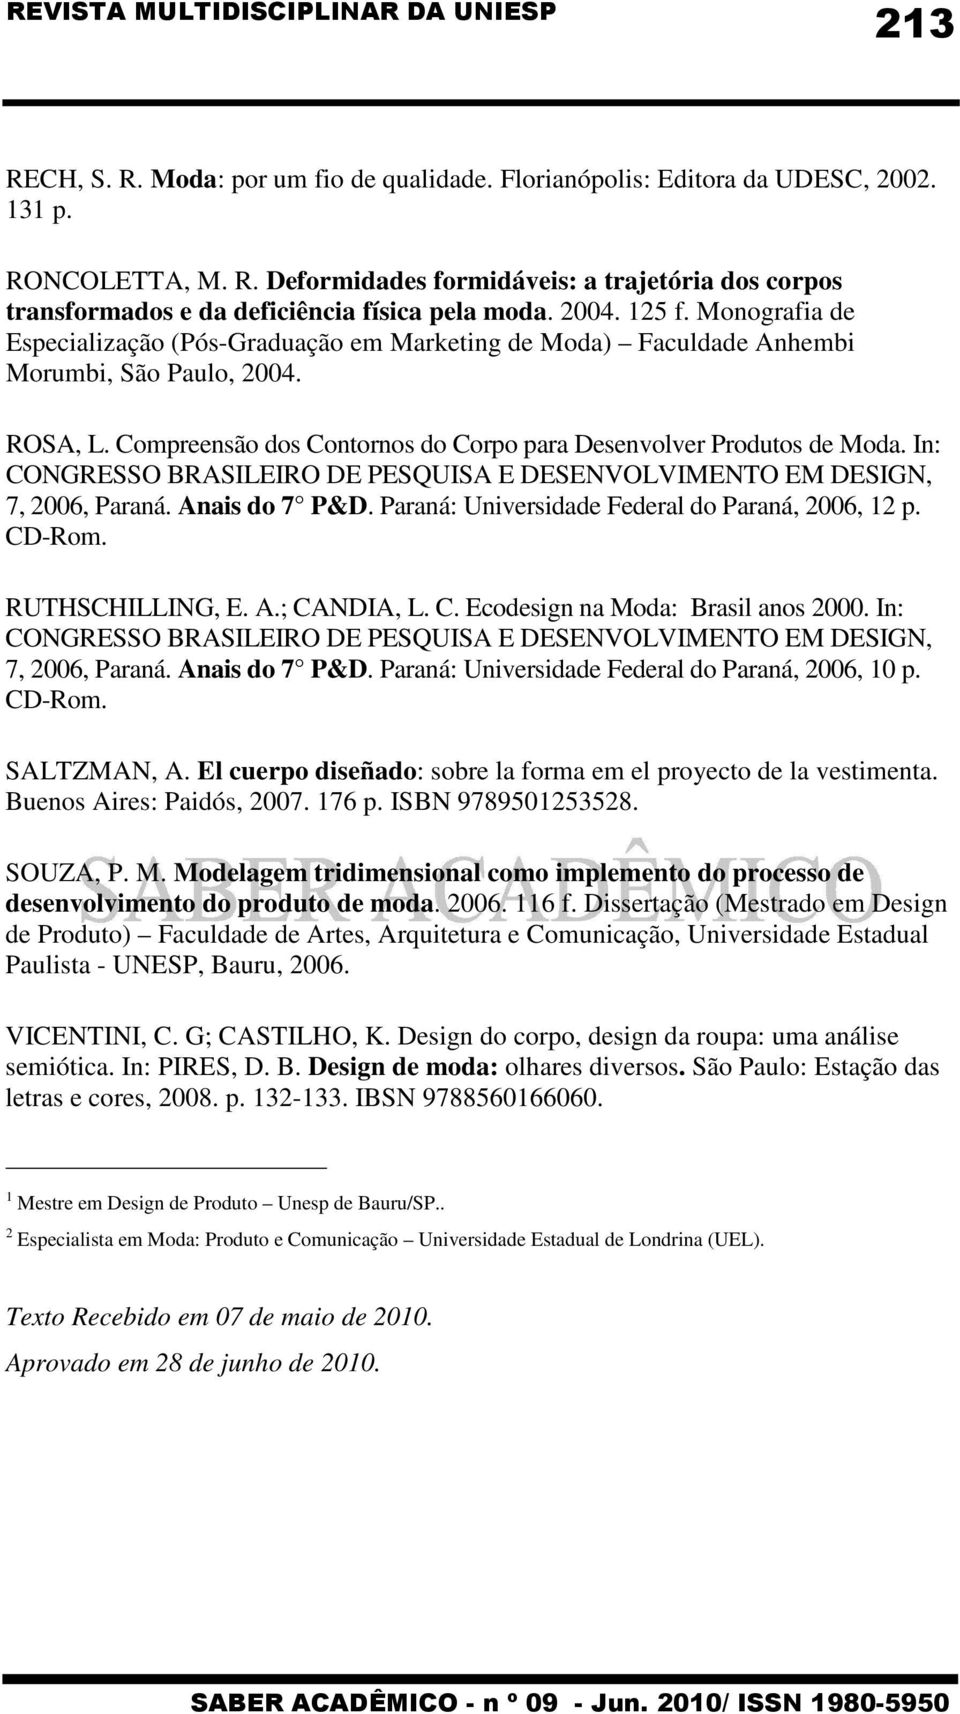 Compreensão dos Contornos do Corpo para Desenvolver Produtos de Moda. In: CONGRESSO BRASILEIRO DE PESQUISA E DESENVOLVIMENTO EM DESIGN, 7, 2006, Paraná. Anais do 7 P&D.